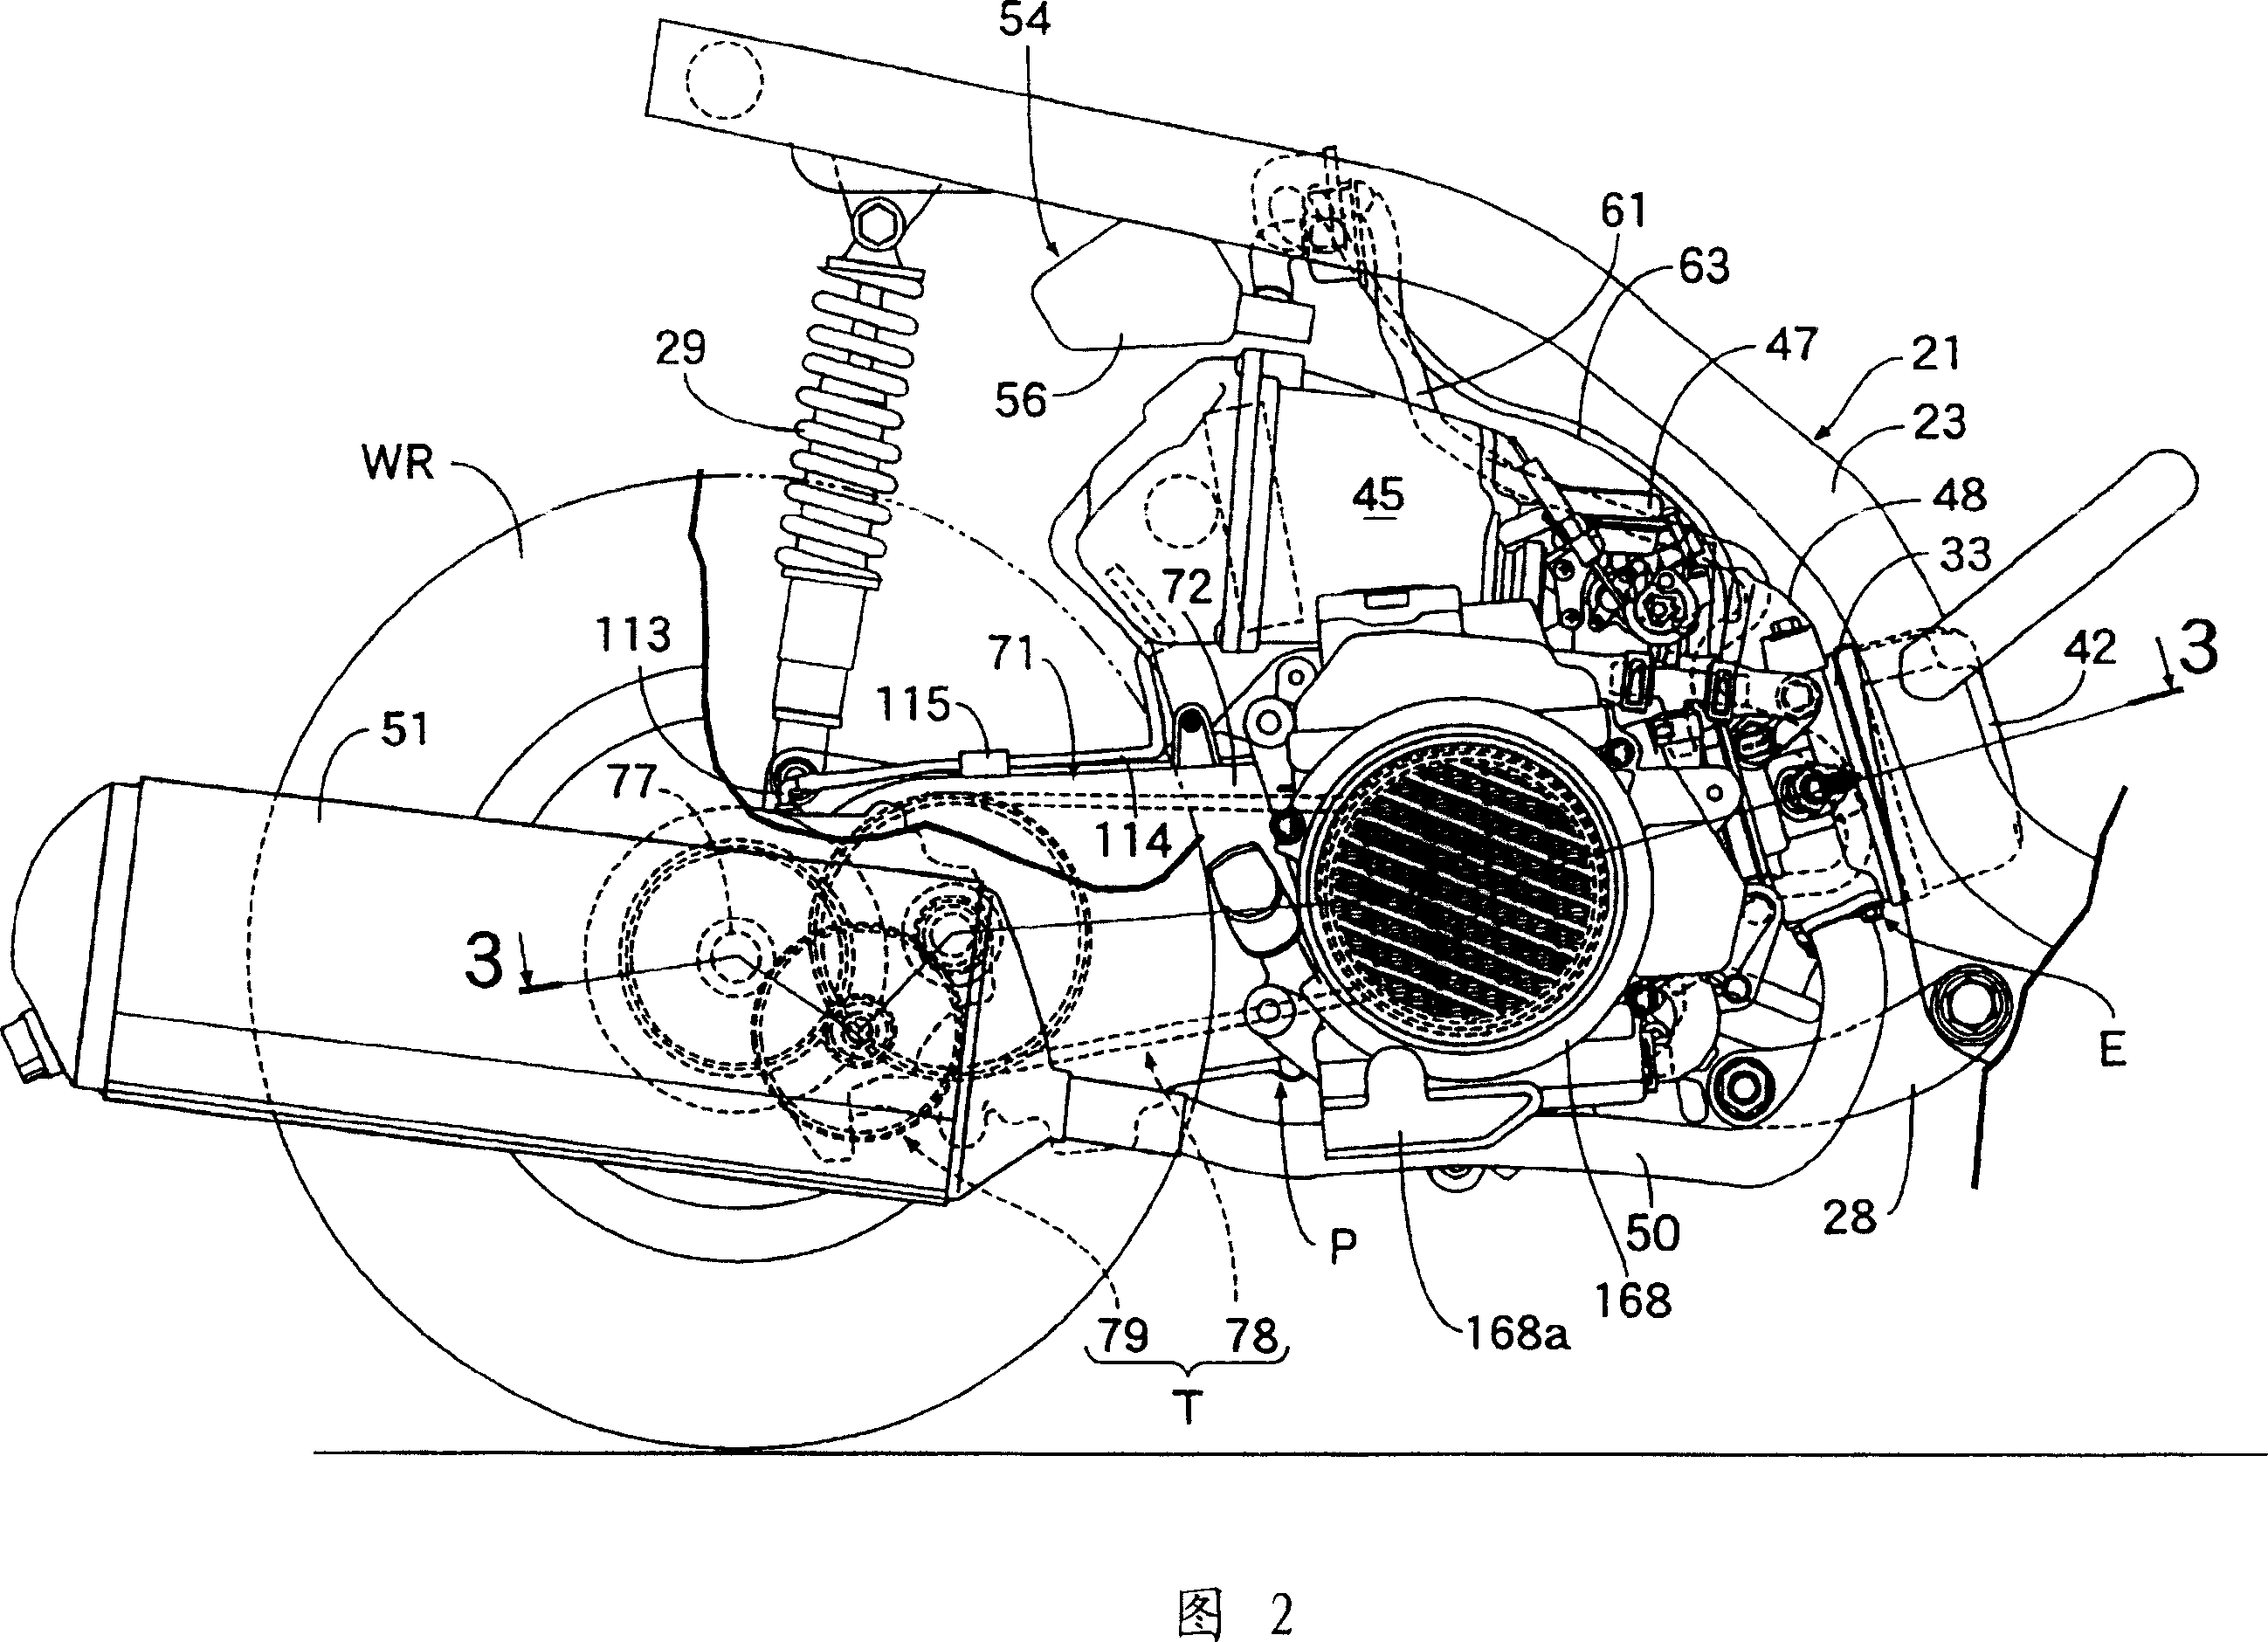 Two-wheeled motor vehicle transmission box aeration structure